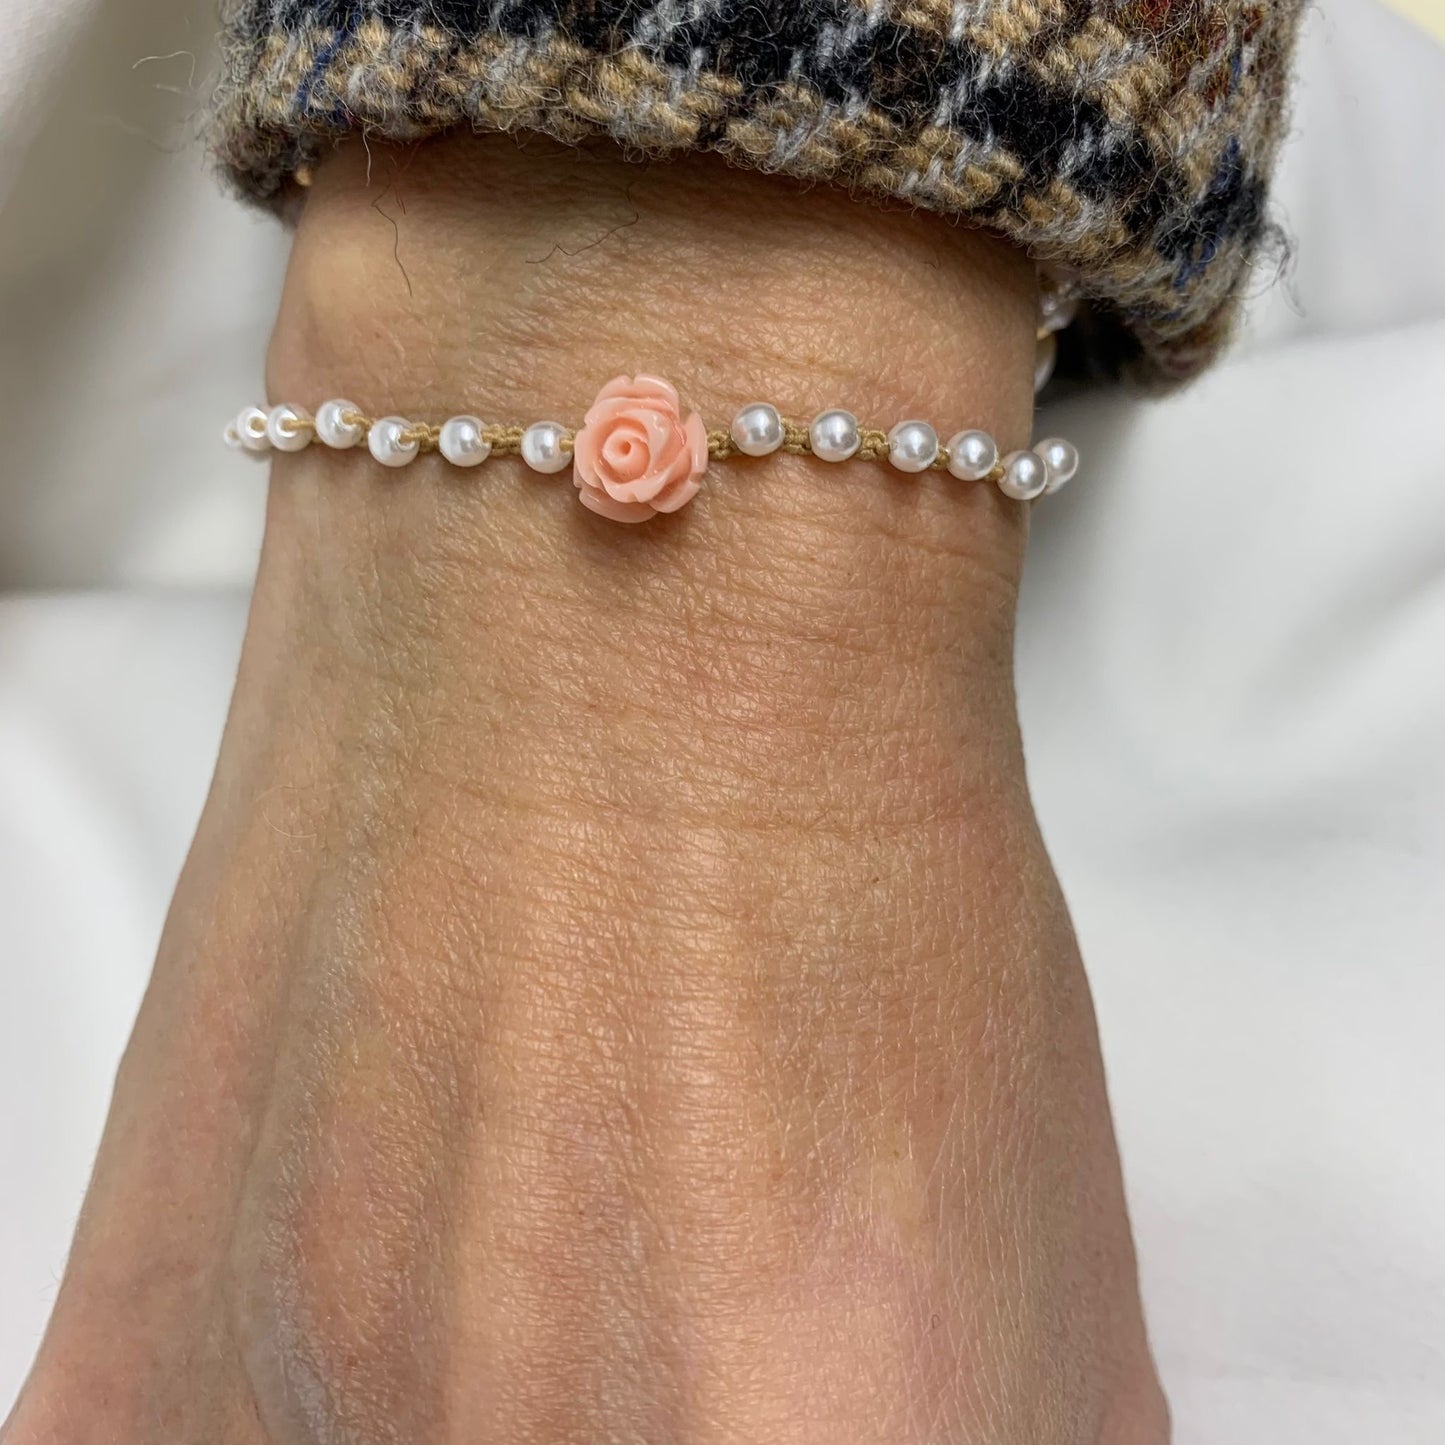 Bracciale elastico perle bianche con rosellina rosa chiaro